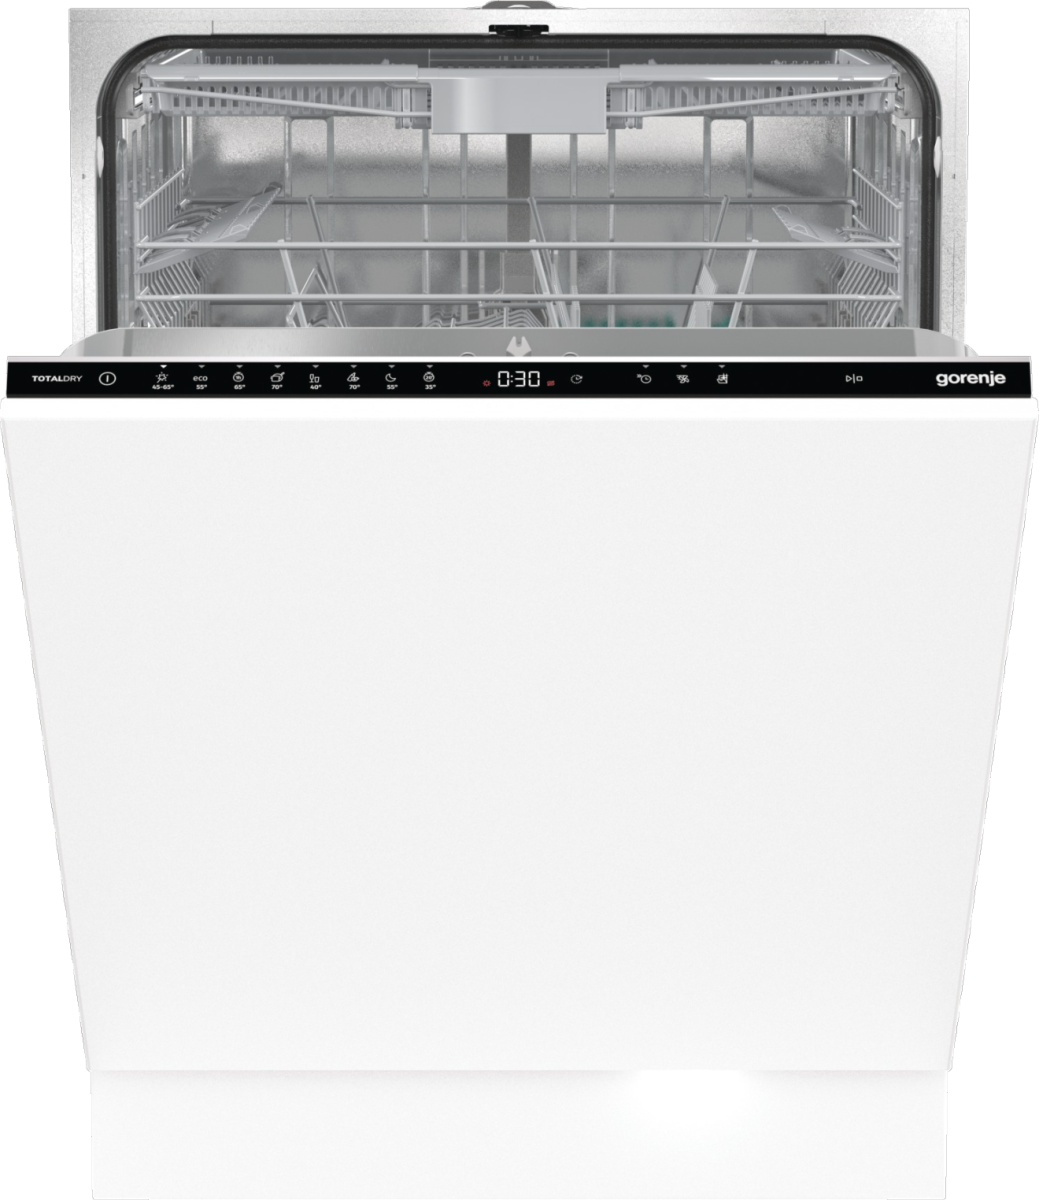 Встраиваемая посудомоечная машина Gorenje GV663D60 встраиваемая посудомоечная машина gorenje gv520e10s